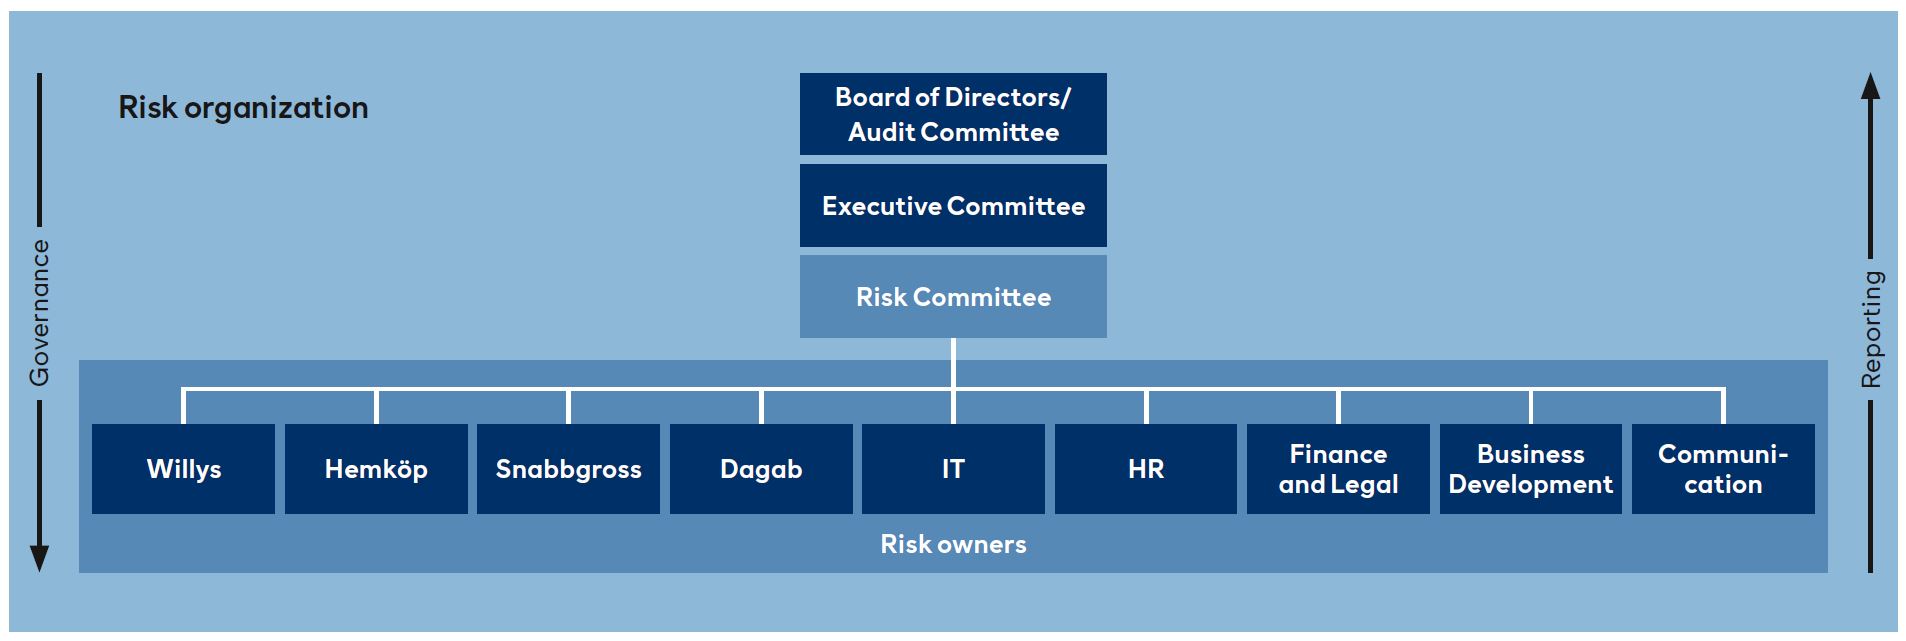 Risk organization 2020.JPG